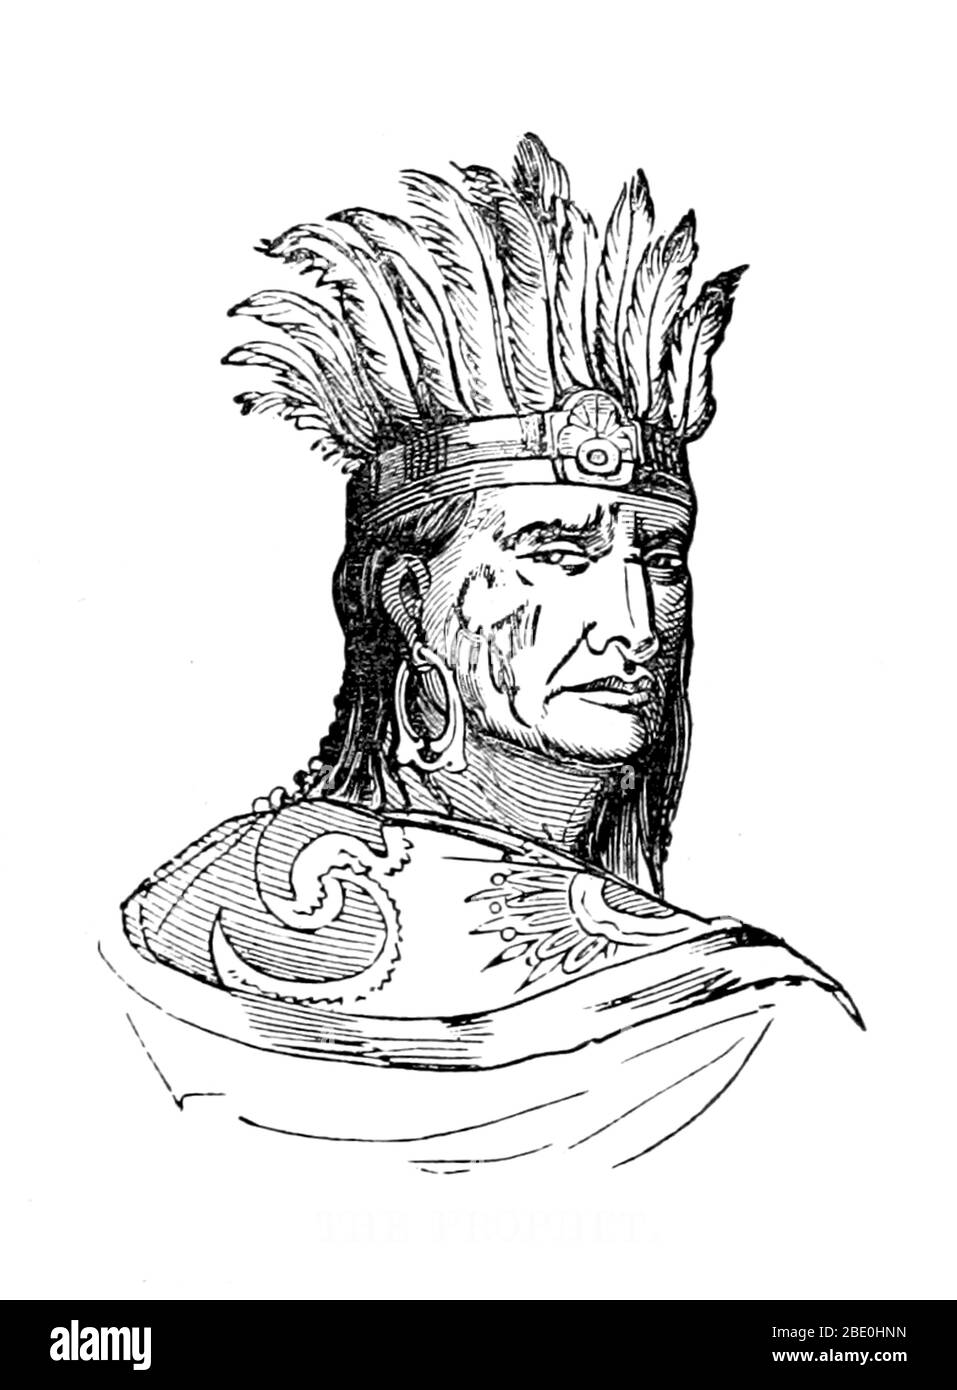 Bild von Seite 71 von 'Illustrated Historical Sketches of the Indians' von John Frost, 1857. Tenskwatawa (März 1768 - November 1836) war ein indianischer religiöser und politischer Führer des Shawnee Stammes. Er führte eine Reinigungsbewegung, um sein Volk auf ihre traditionellen Wege zurückzubringen und die Übel zu vertilgen, die von den Amerikanern vertreten wurden. Seine Anhänger folgten ihm nach Westen, um eine große multi-Stammes-Gemeinschaft zu bilden, die den Weißen als Prophetstown (Tippecanoe) im Jahr 1808 bekannt ist. Der Ort war auch ein geografischer zentraler Punkt für die politische und militärische Allianz, die sich um Tenskwatawas bildete Stockfoto